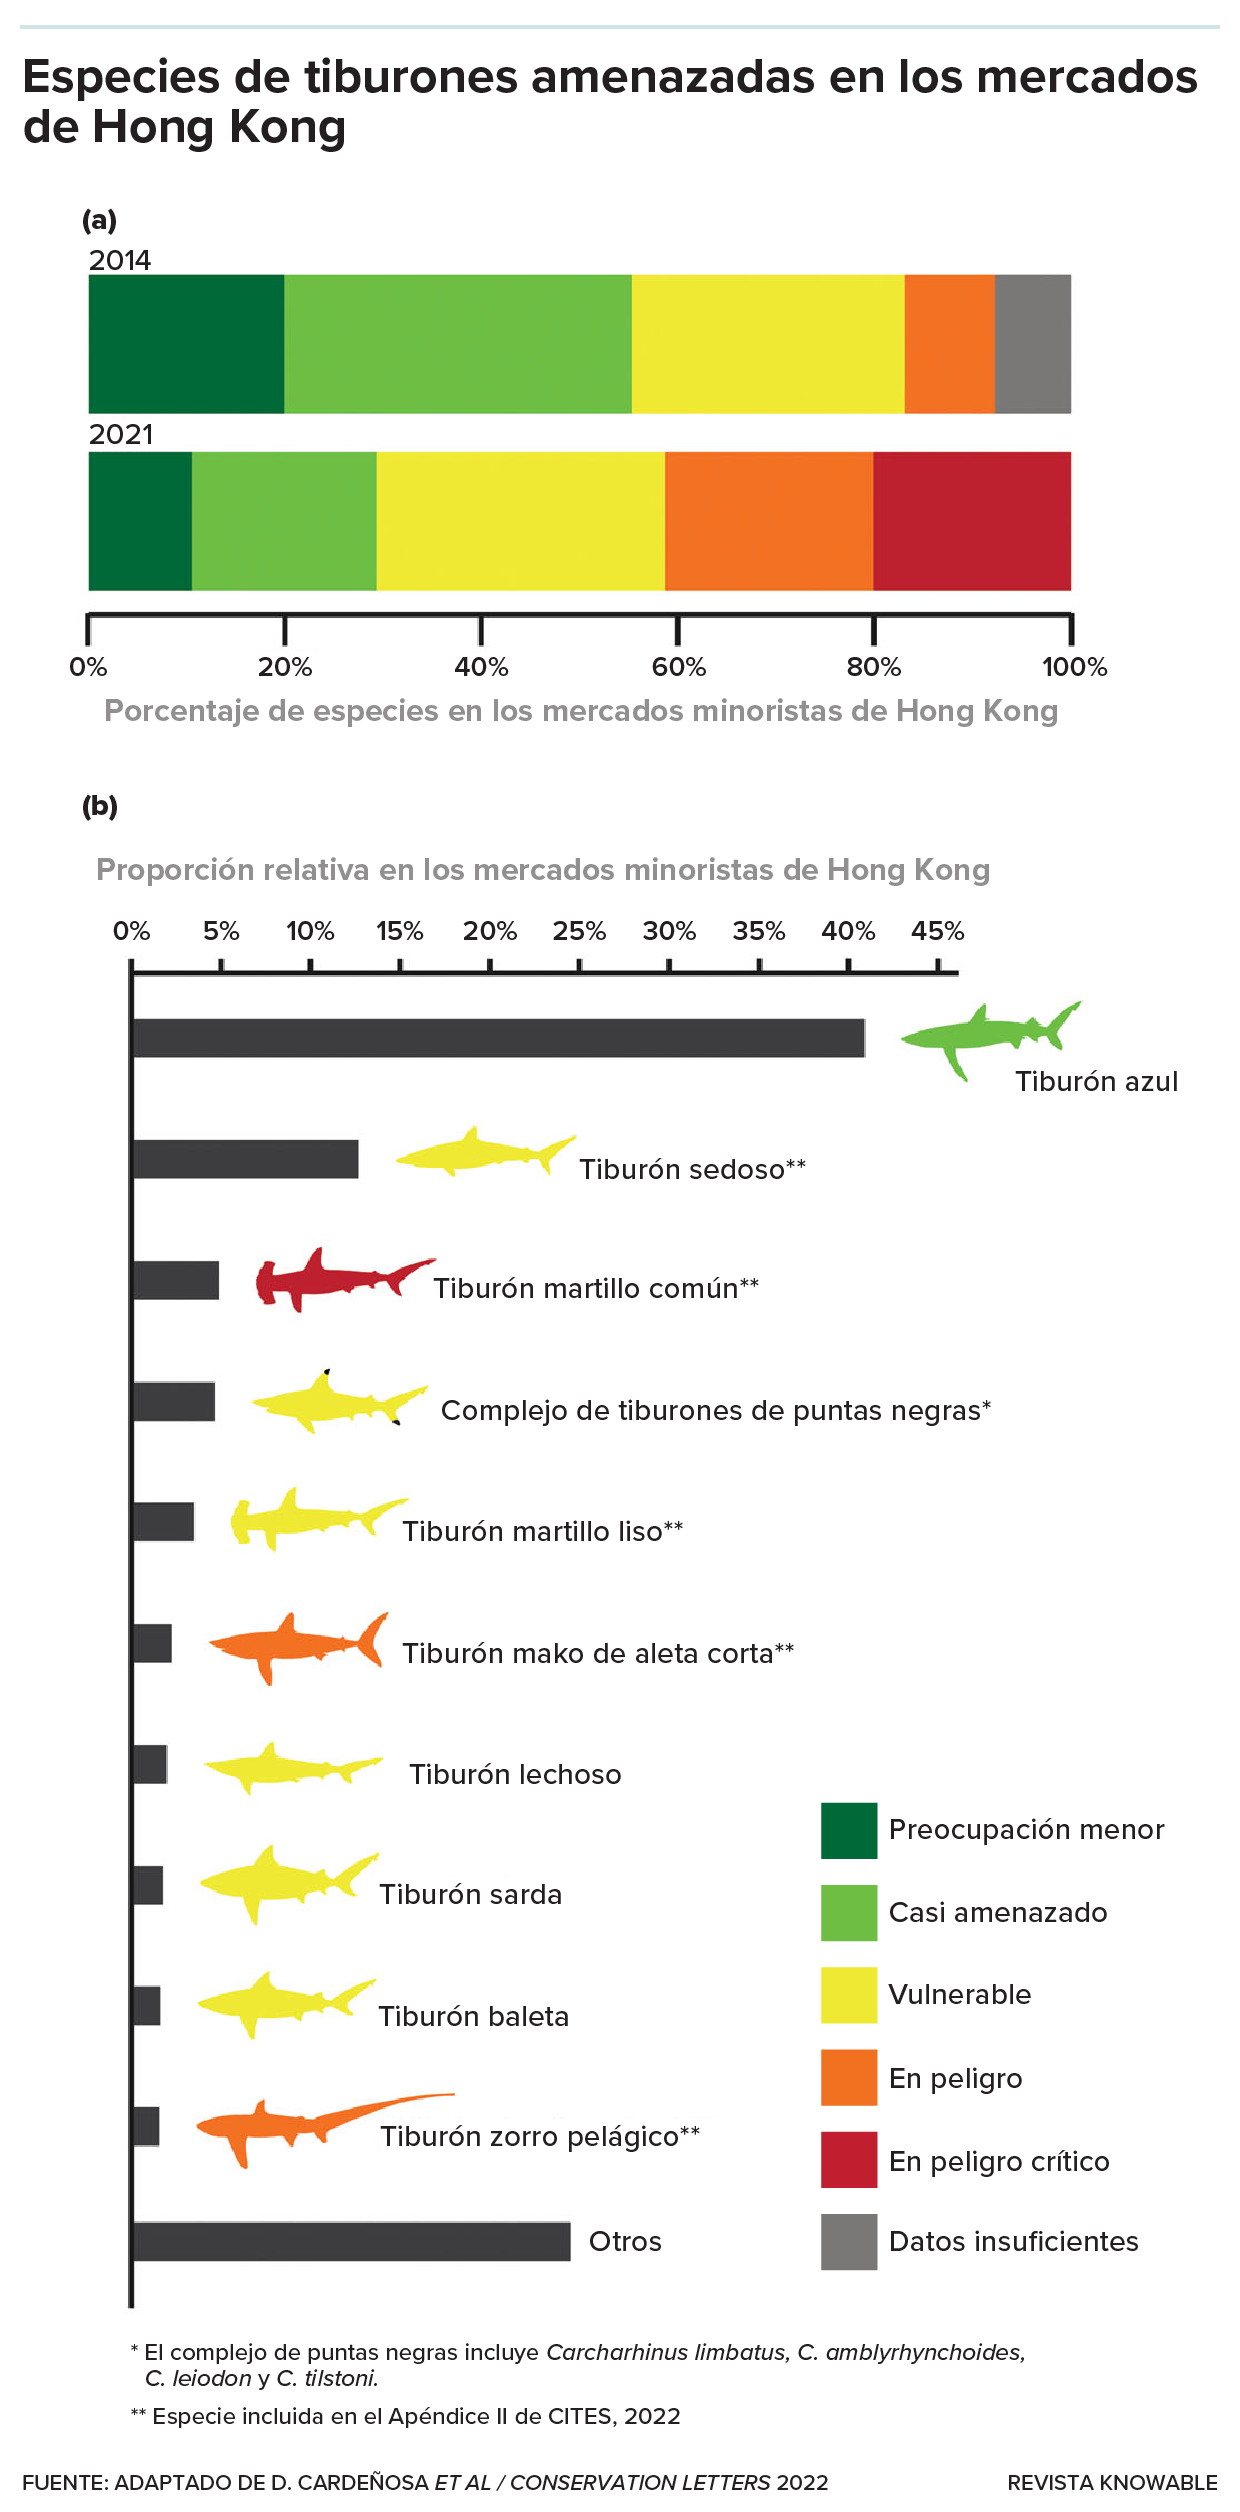 Un gráfico de barras muestra la elevada contribución de las especies amenazadas al comercio de aletas de tiburón en los mercados de Hong Kong entre 2014 y 2021. A continuación, otro gráfico de barras muestra la contribución relativa de las especies de tiburón de mayor valor en ese mercado y su estado de vulnerabilidad según la UICN.